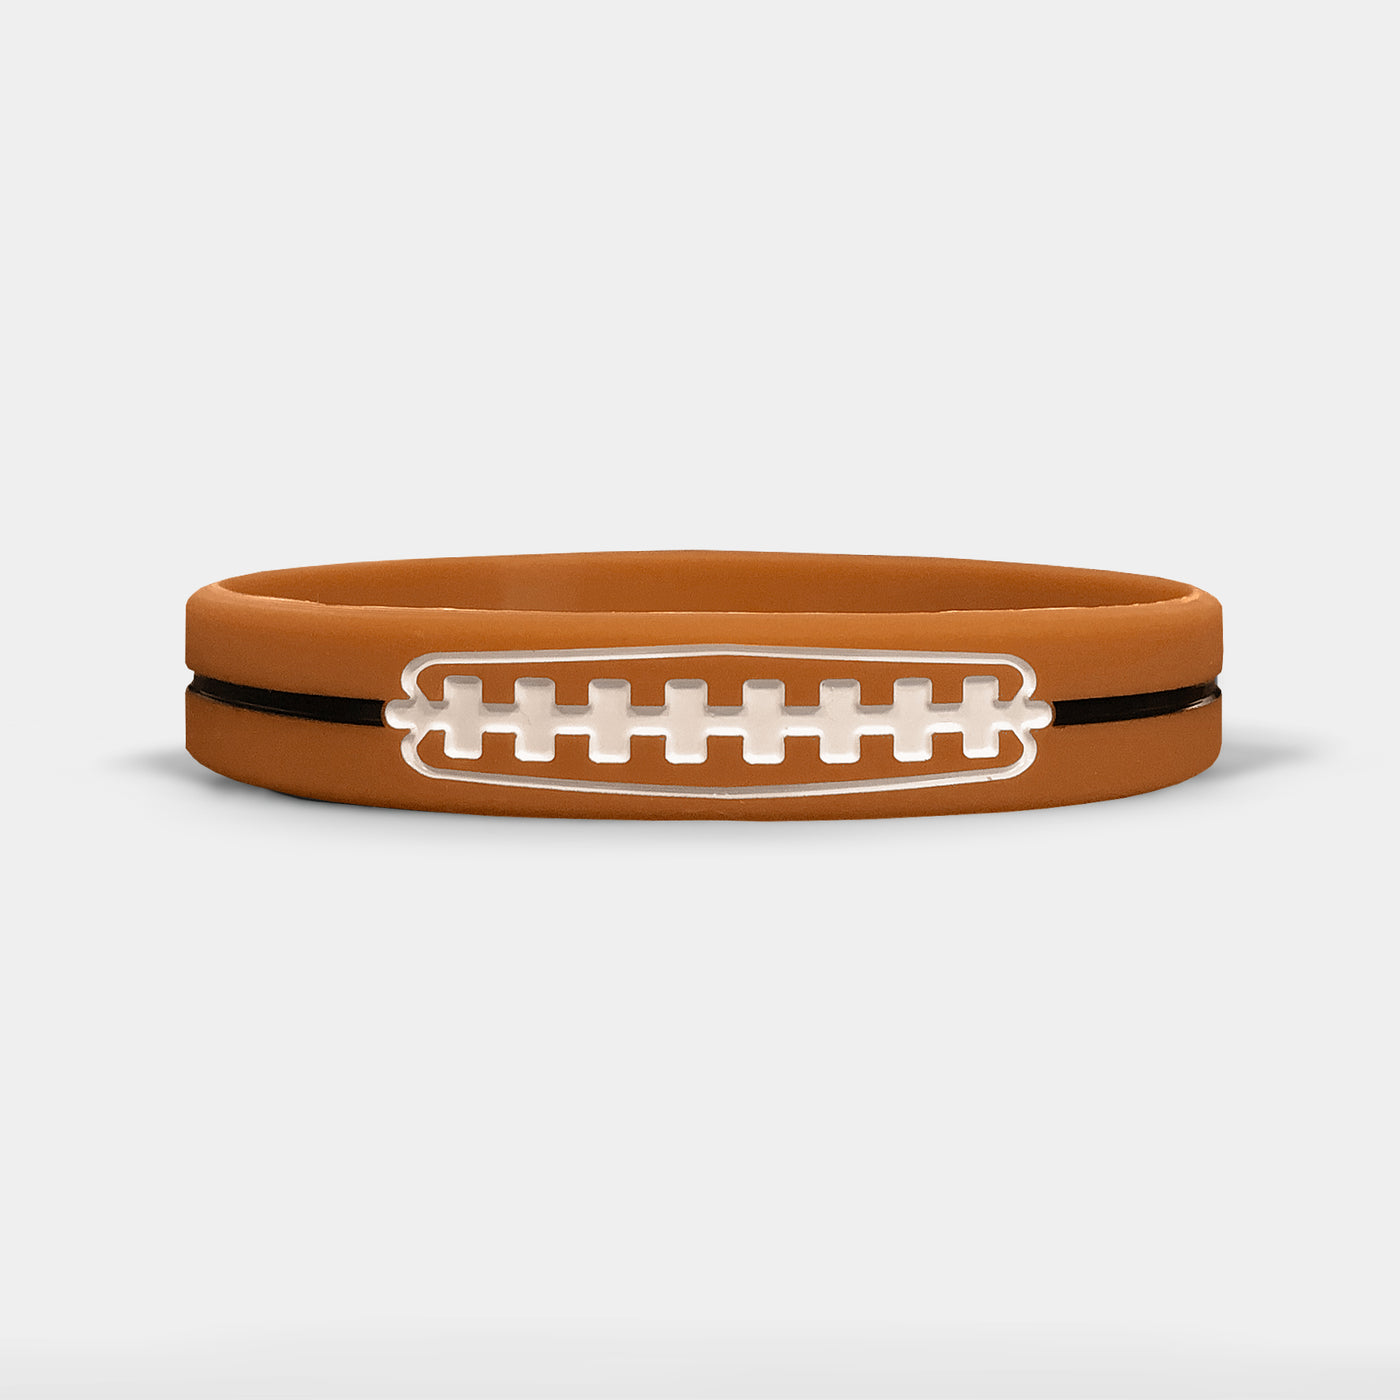 Football Lace Motivational Wristband